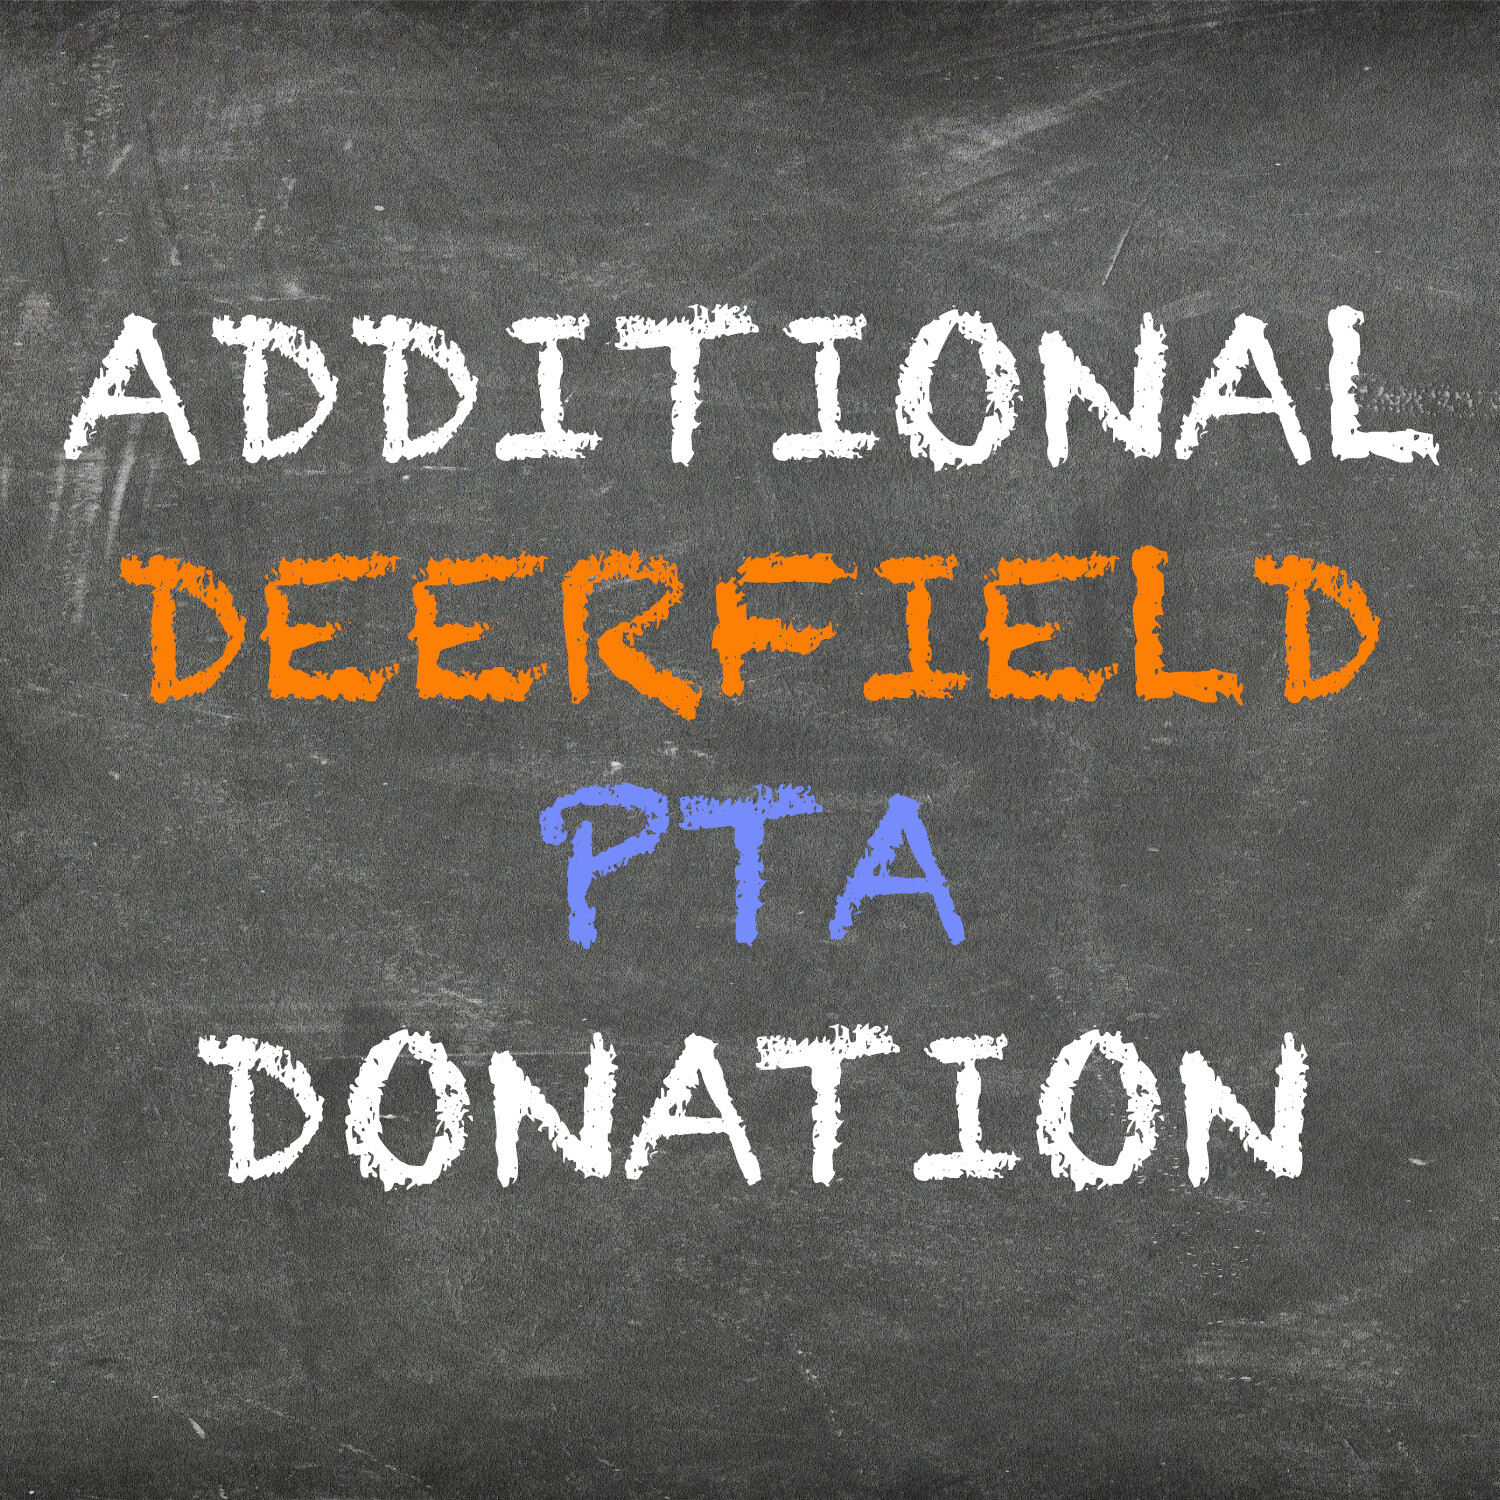 PTA Deerfield Donations